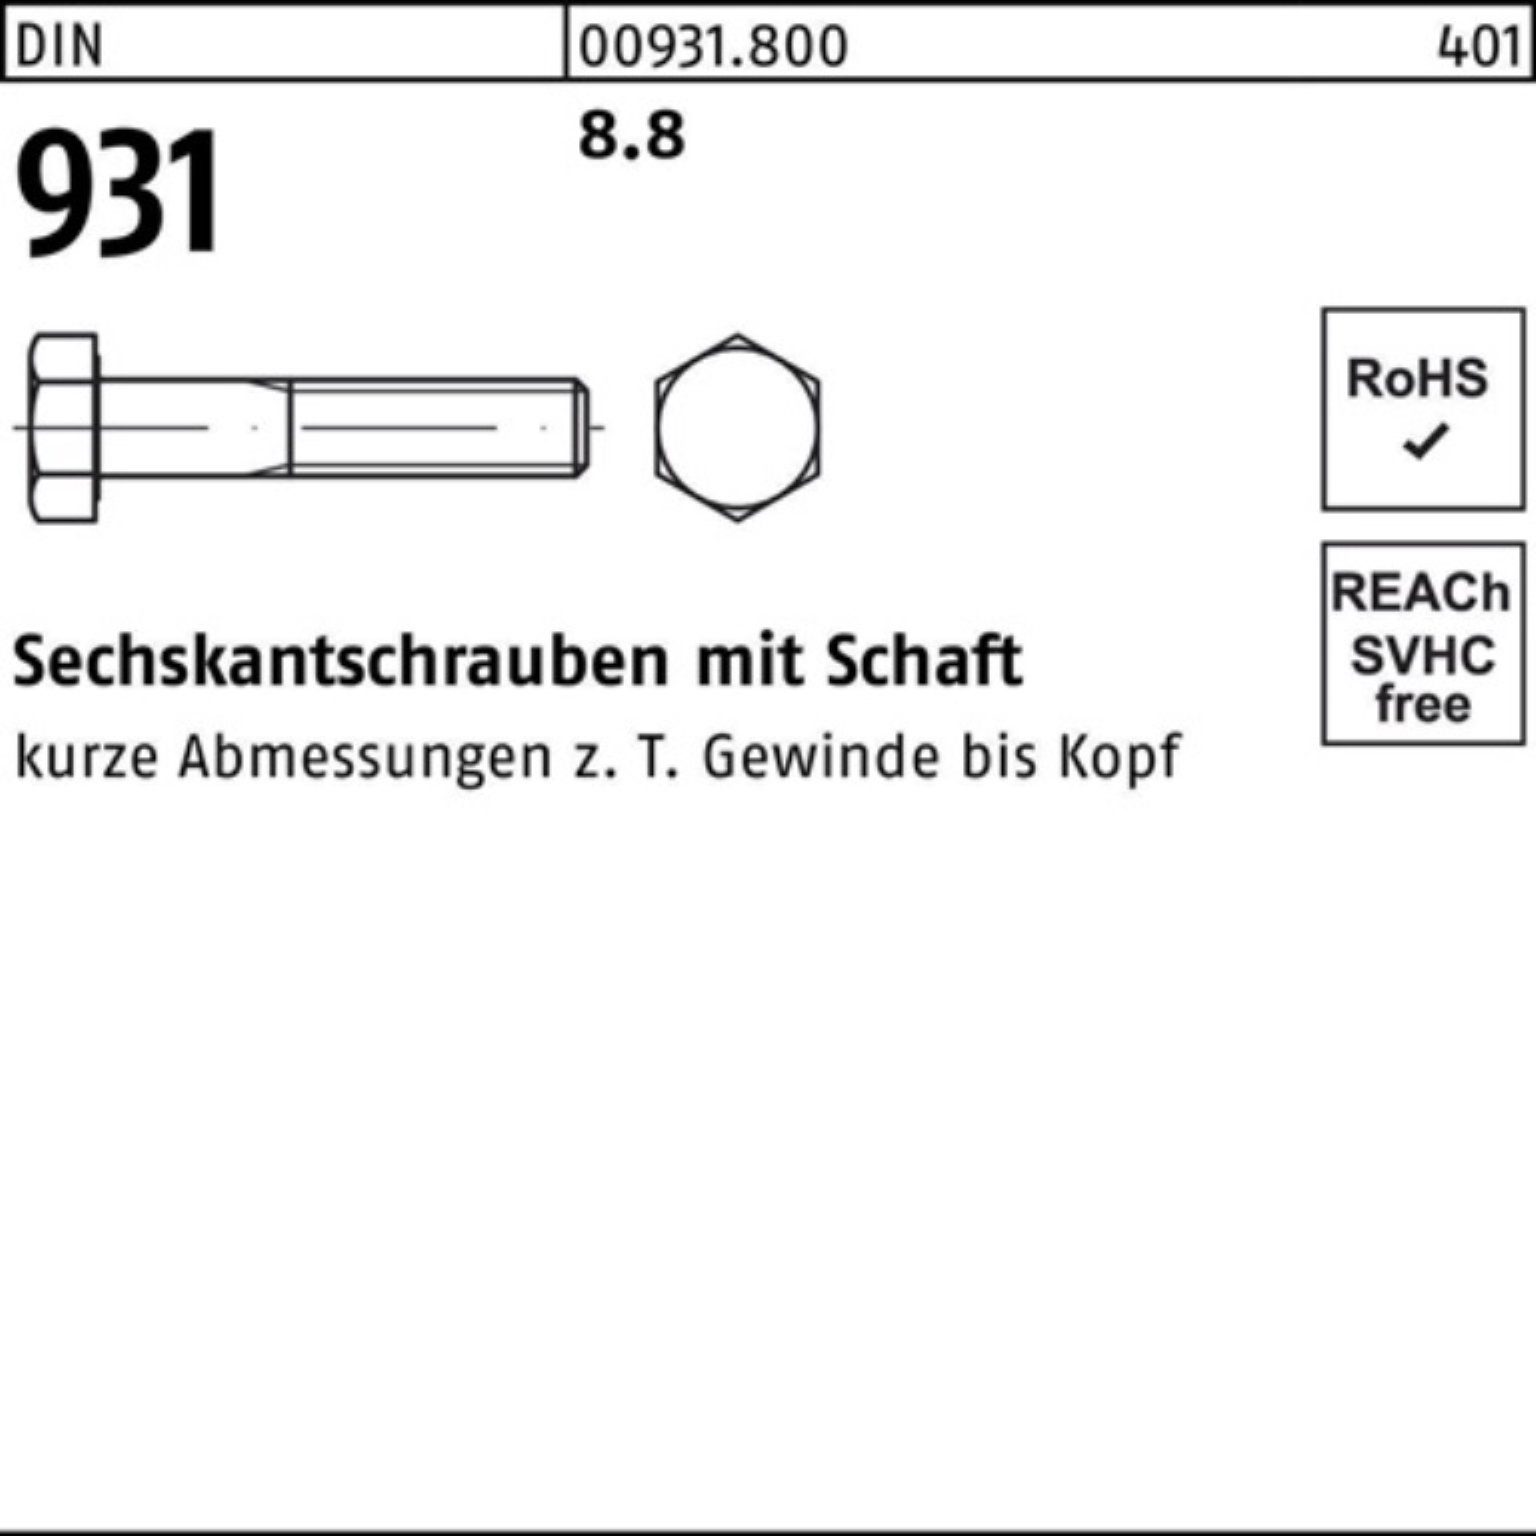 Reyher Pack Sechskantschraube Schaft 85 200 DIN Stück 931 8.8 200er Sechskantschraube DIN M5x